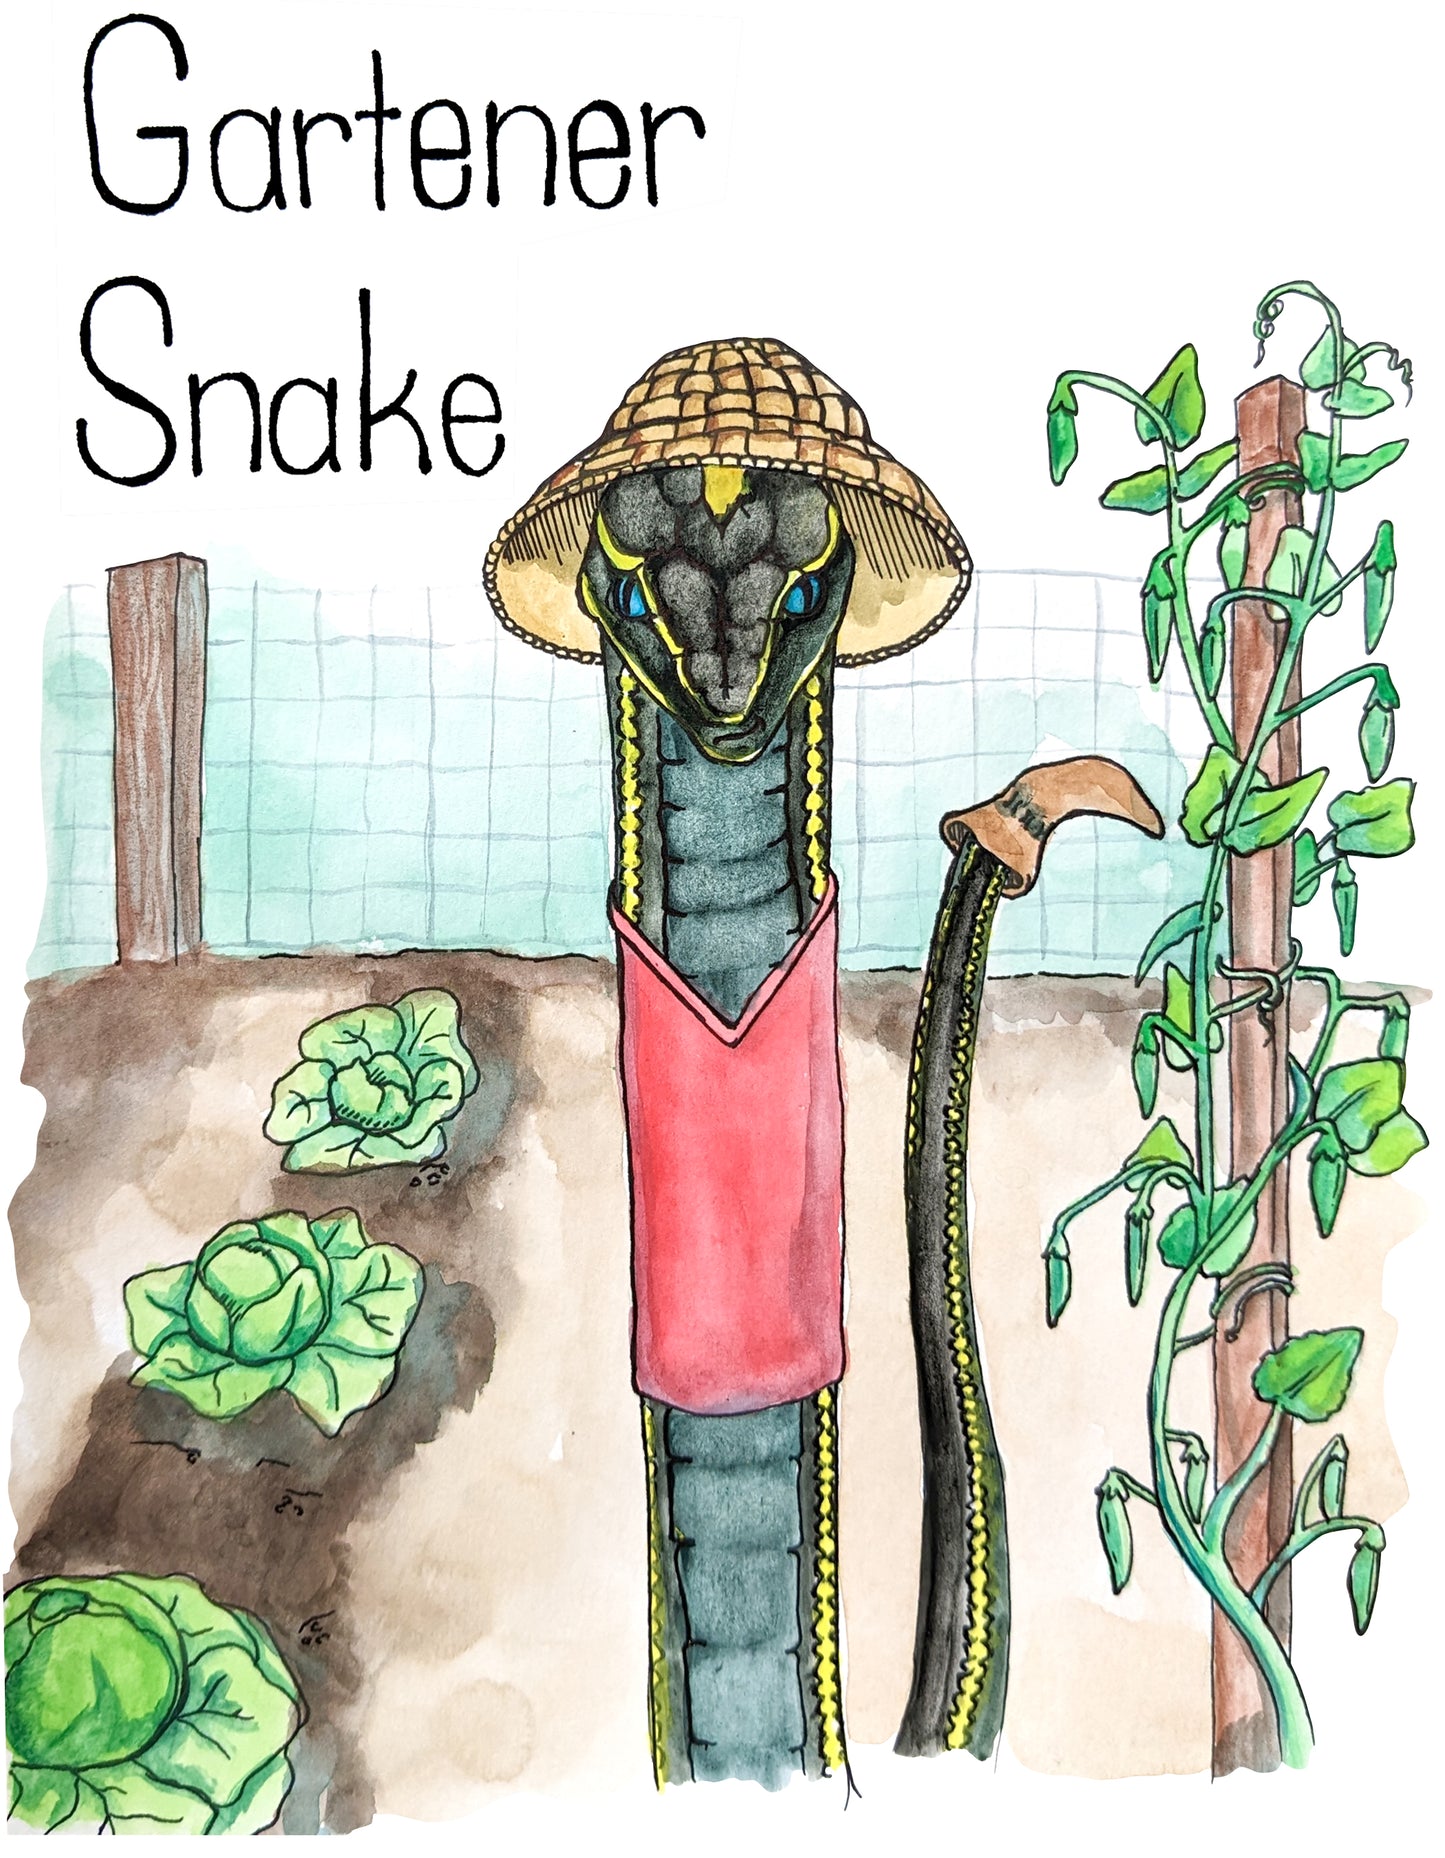 Gartener Snake